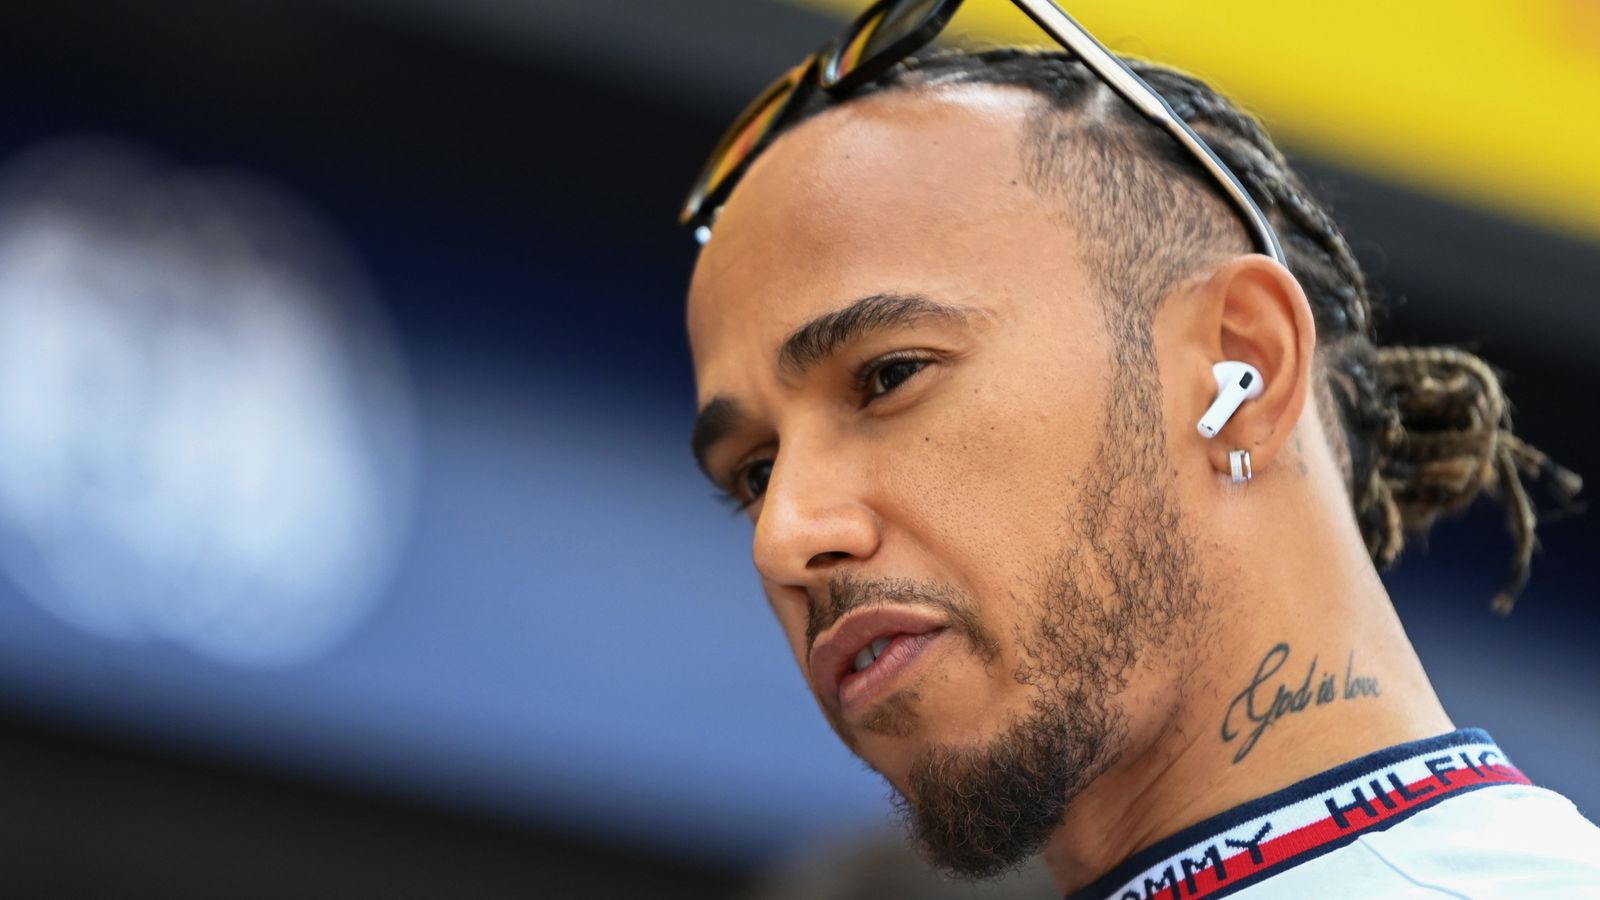 Dutch GP: Lewis Hamilton apologises for furious outburst as Mercedes explain strategy ‘risk’